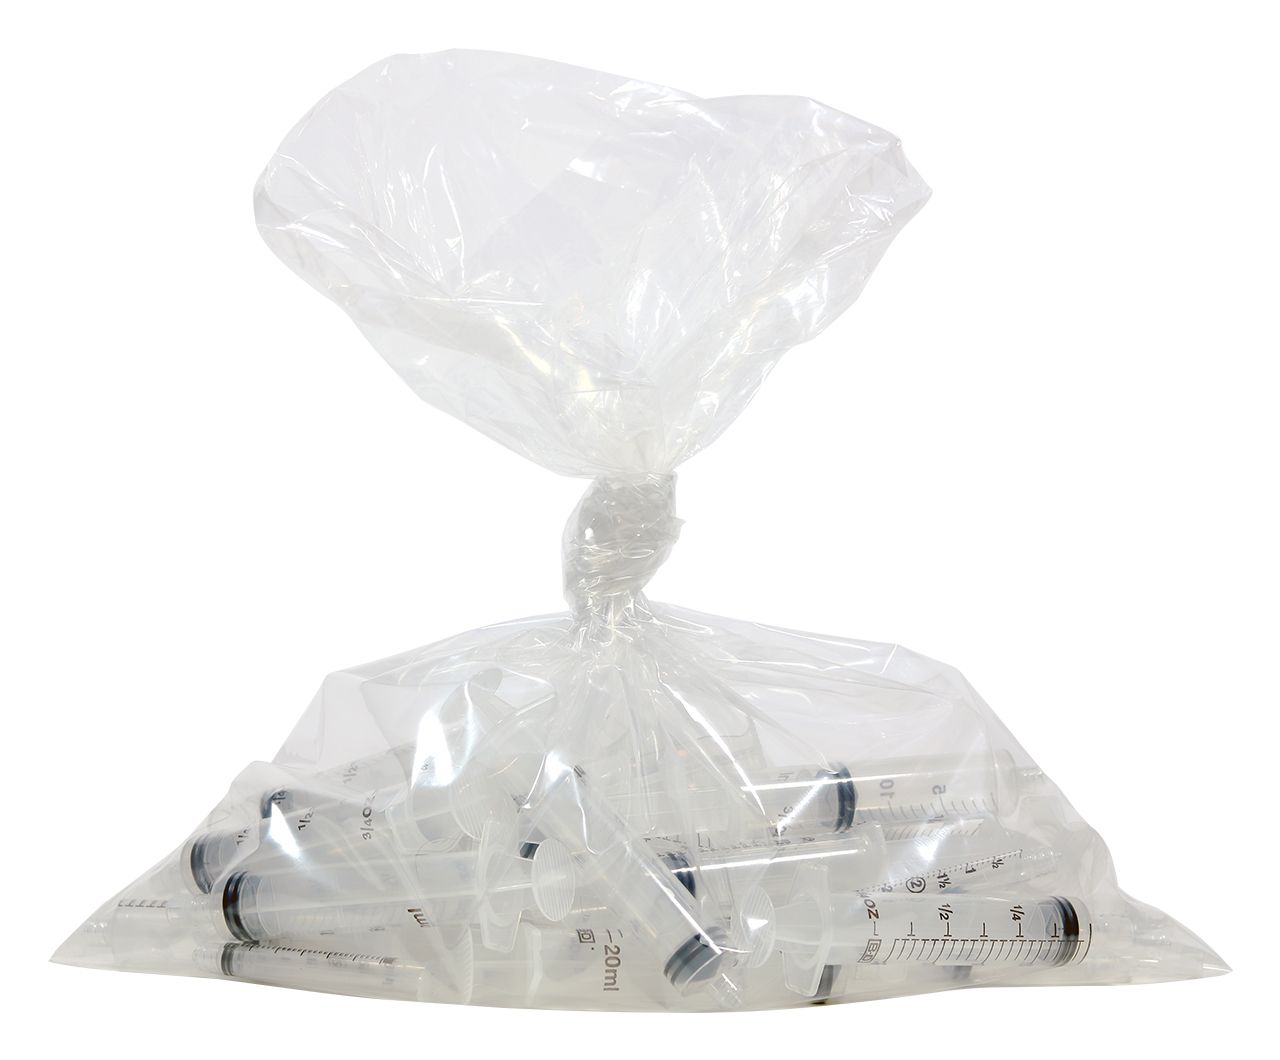 Pharmacy Waste Bag for Sterile Packs - Sterile